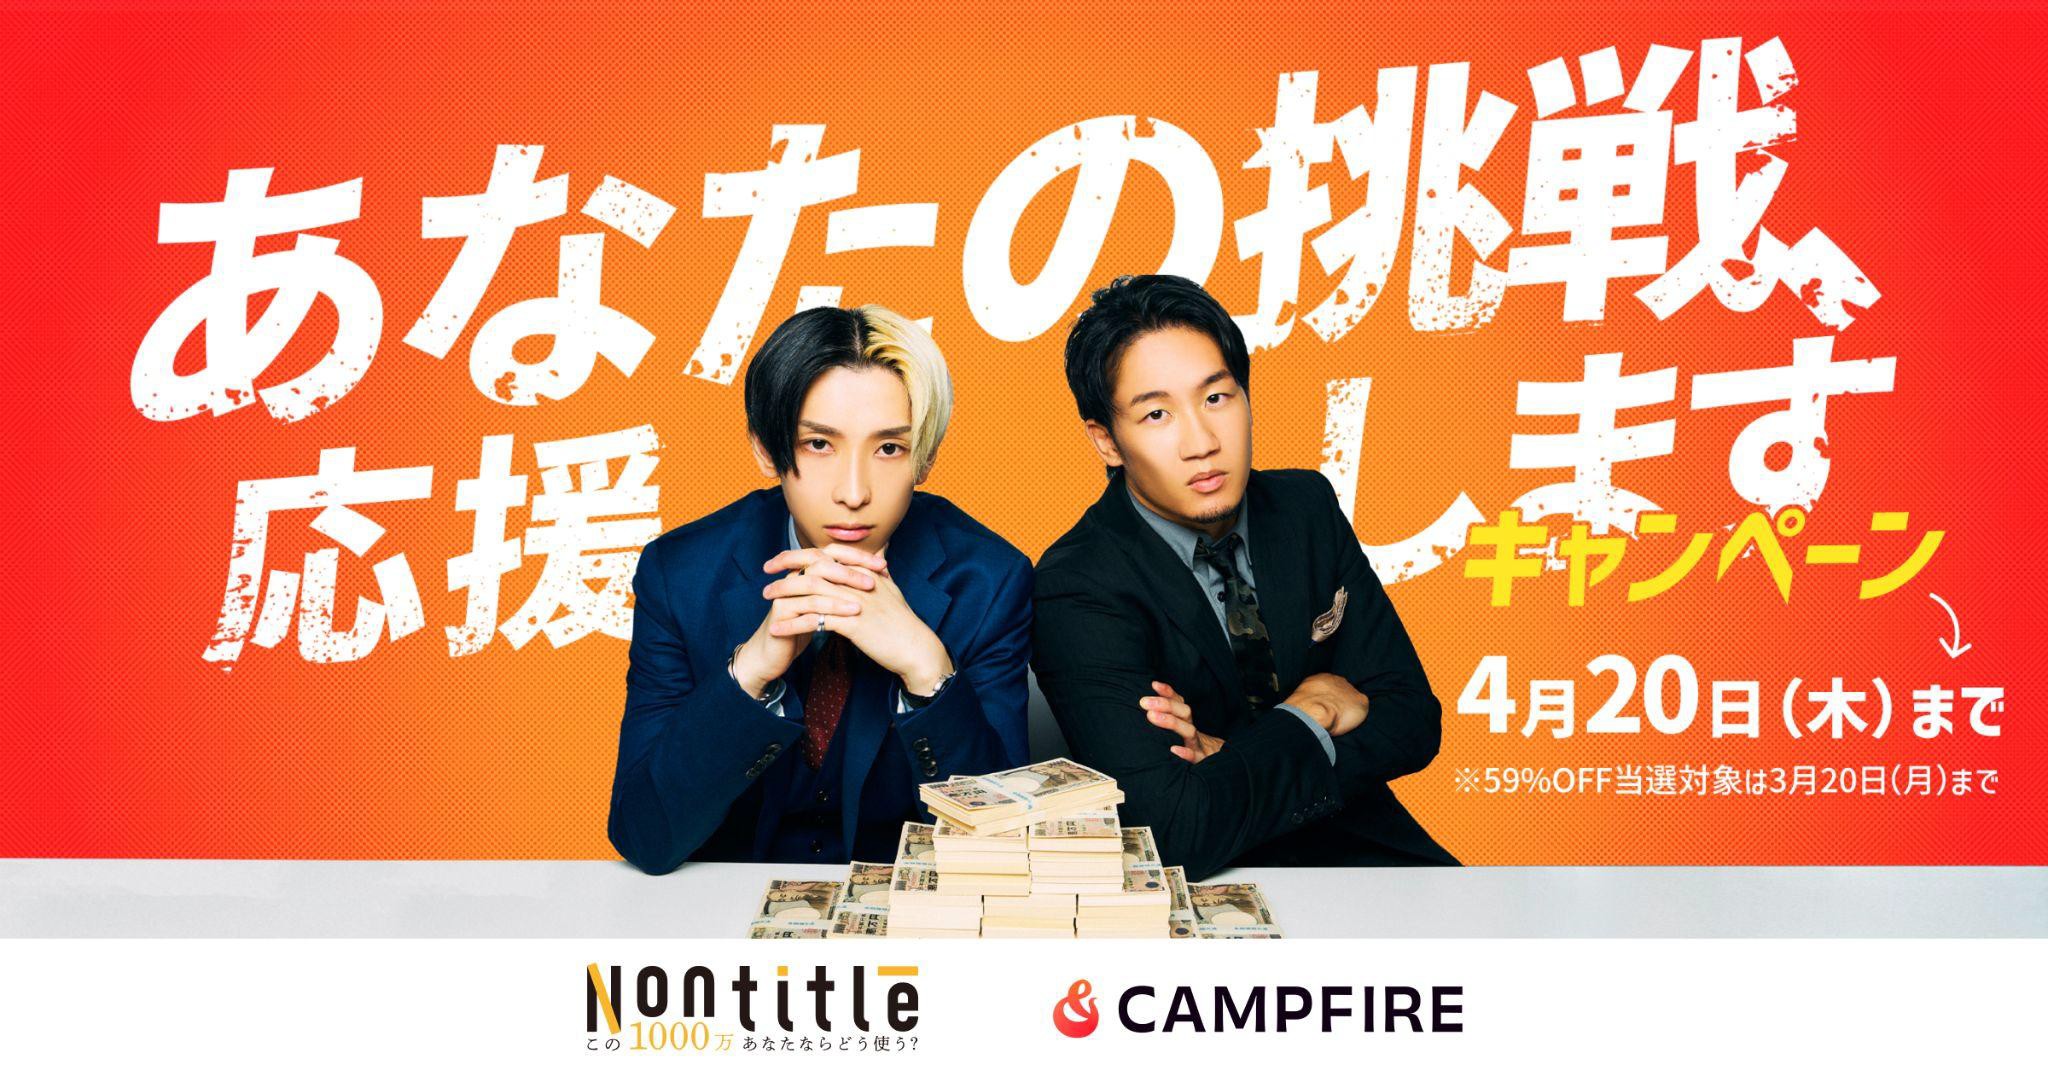 クラウドファンディング「CAMPFIRE」にて「Nontitle」タイアップキャンペーン実施